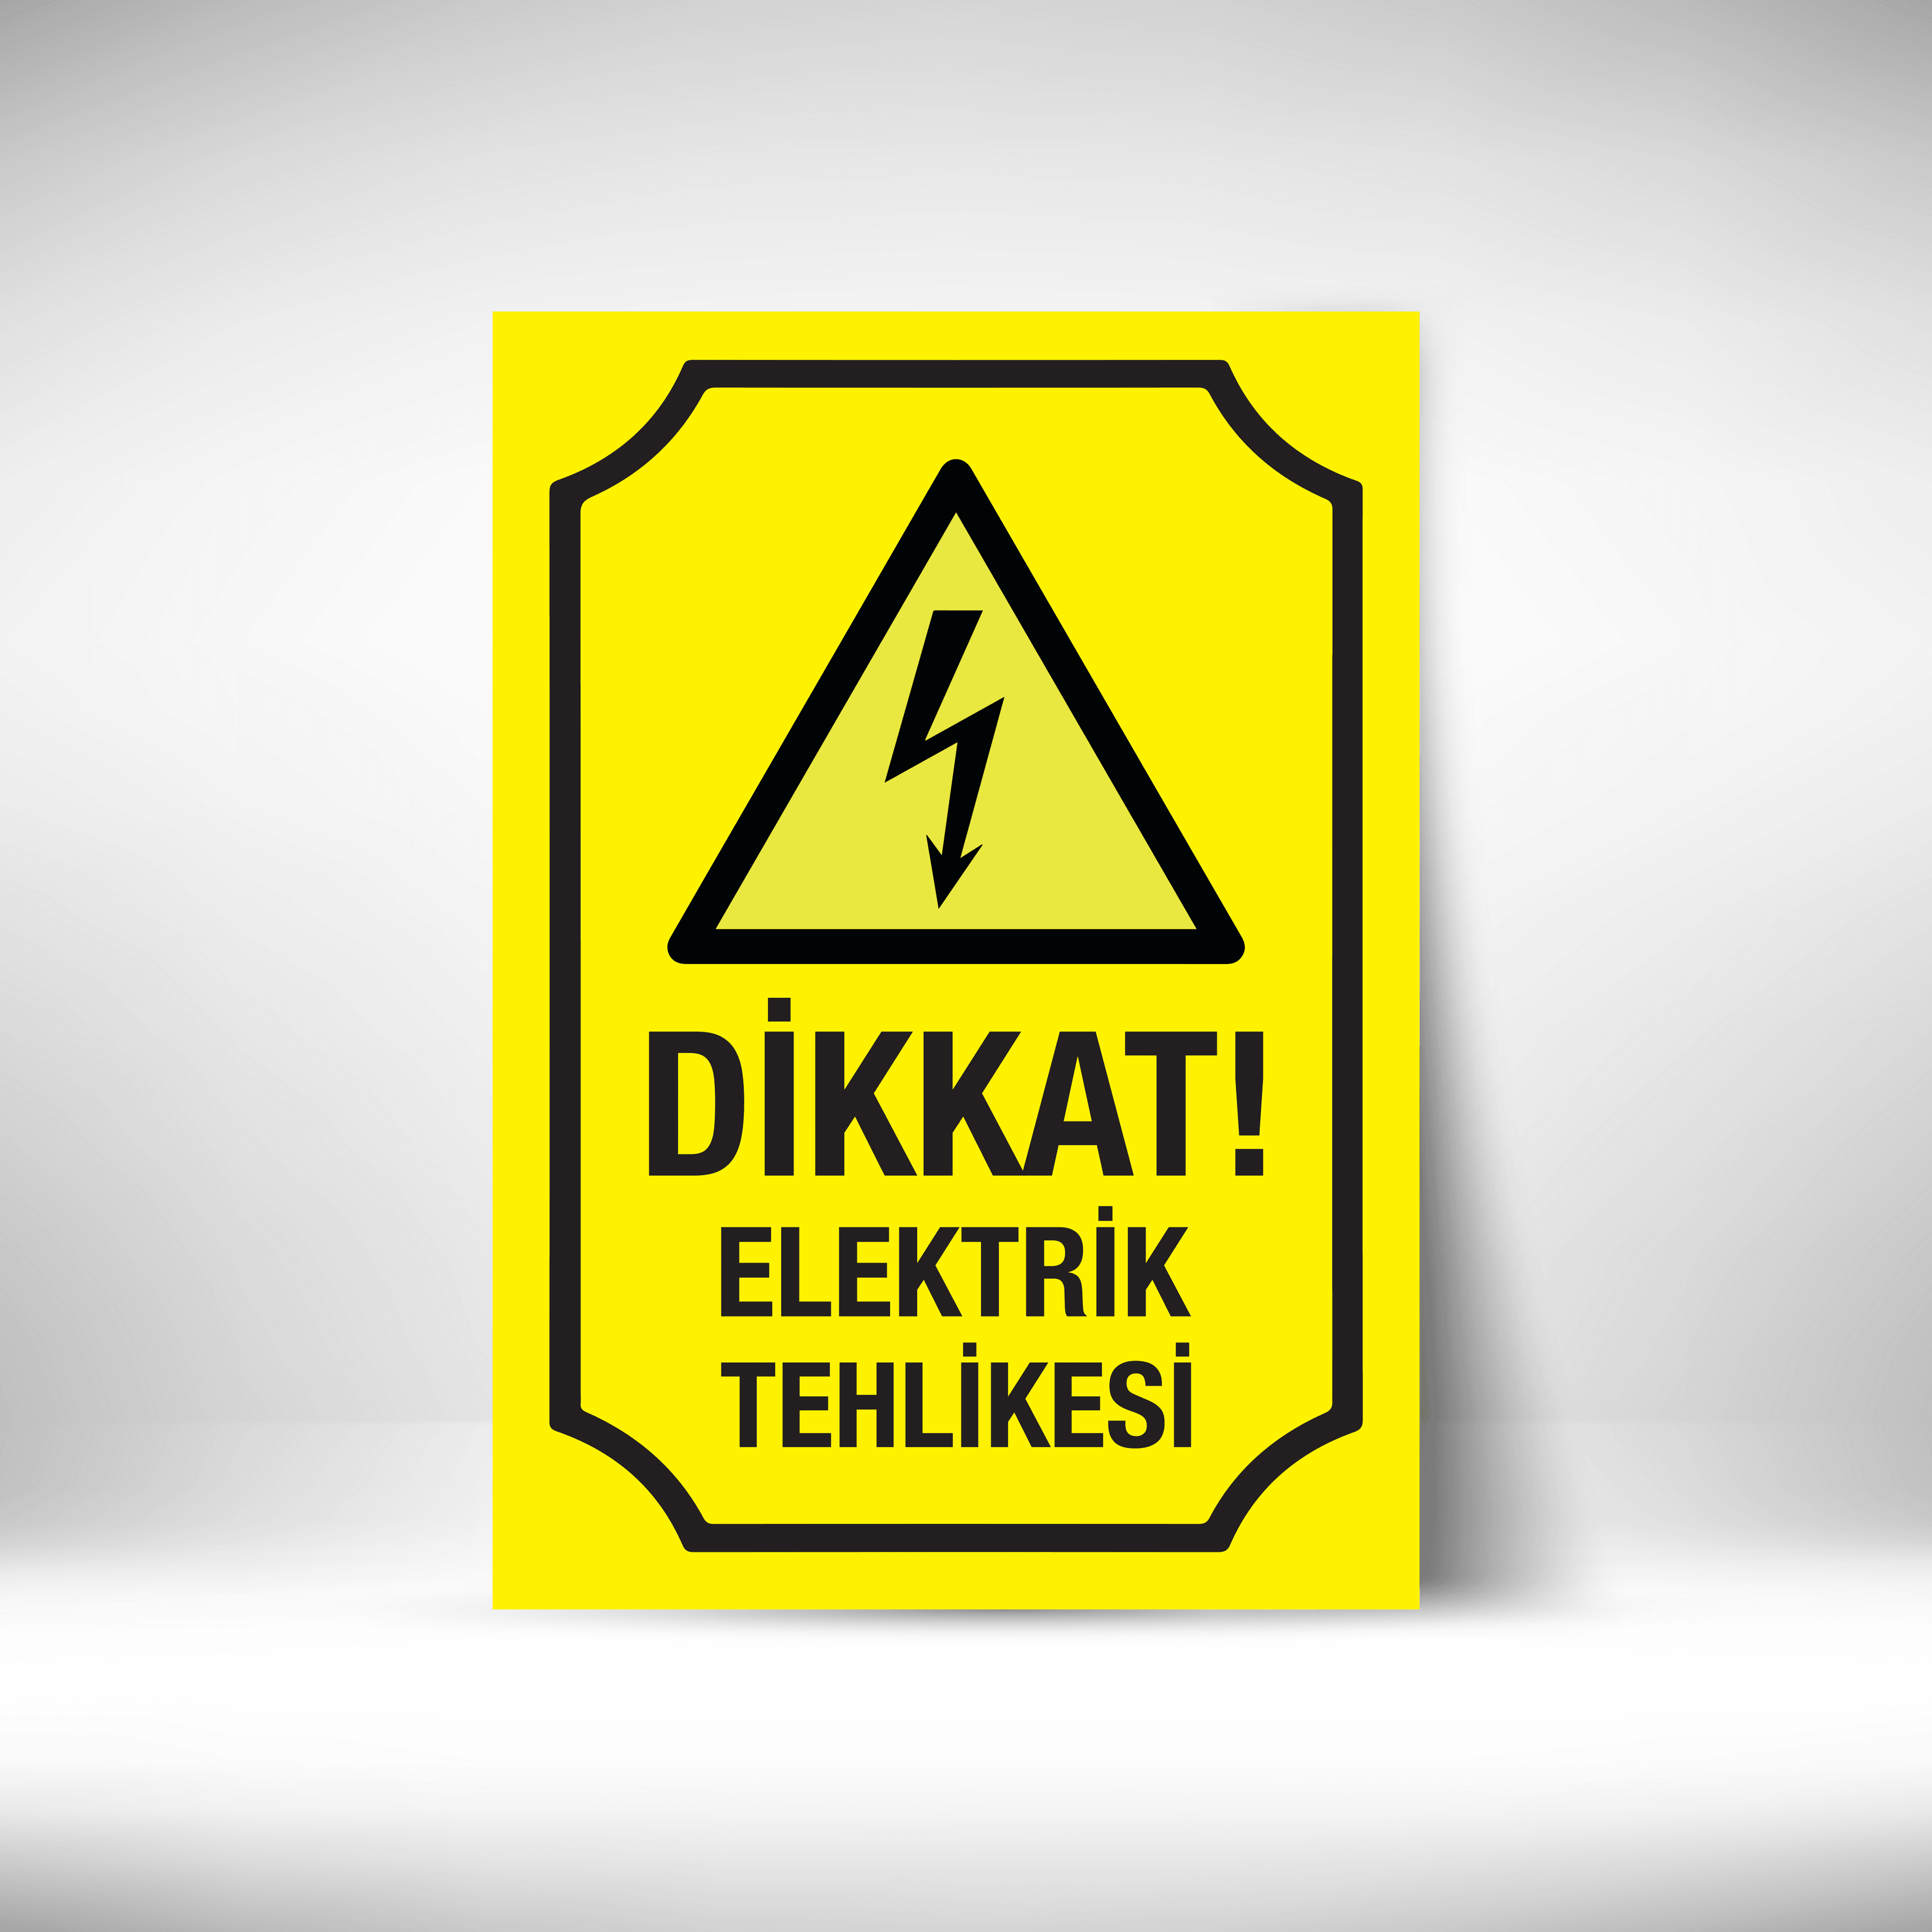 Dikkat Elektrik Tehlikesi image